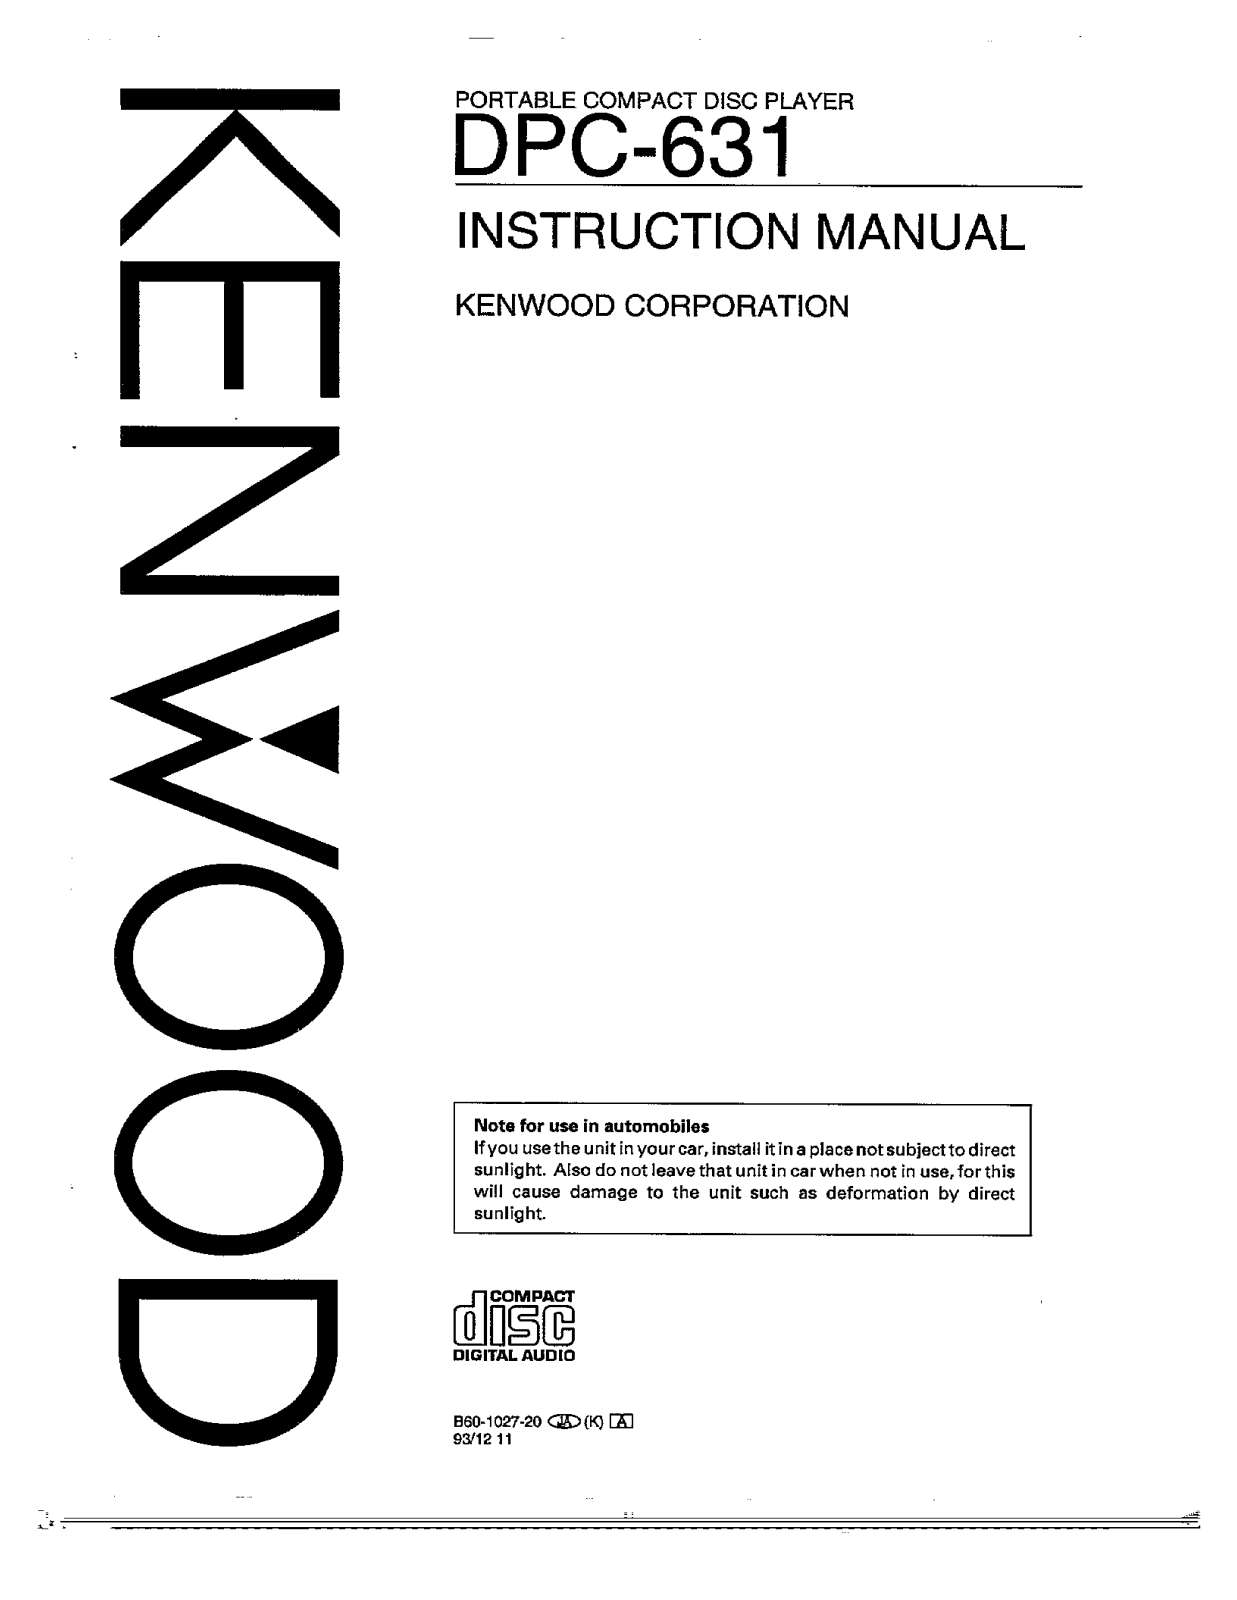 Kenwood DPC-631 Owner's Manual